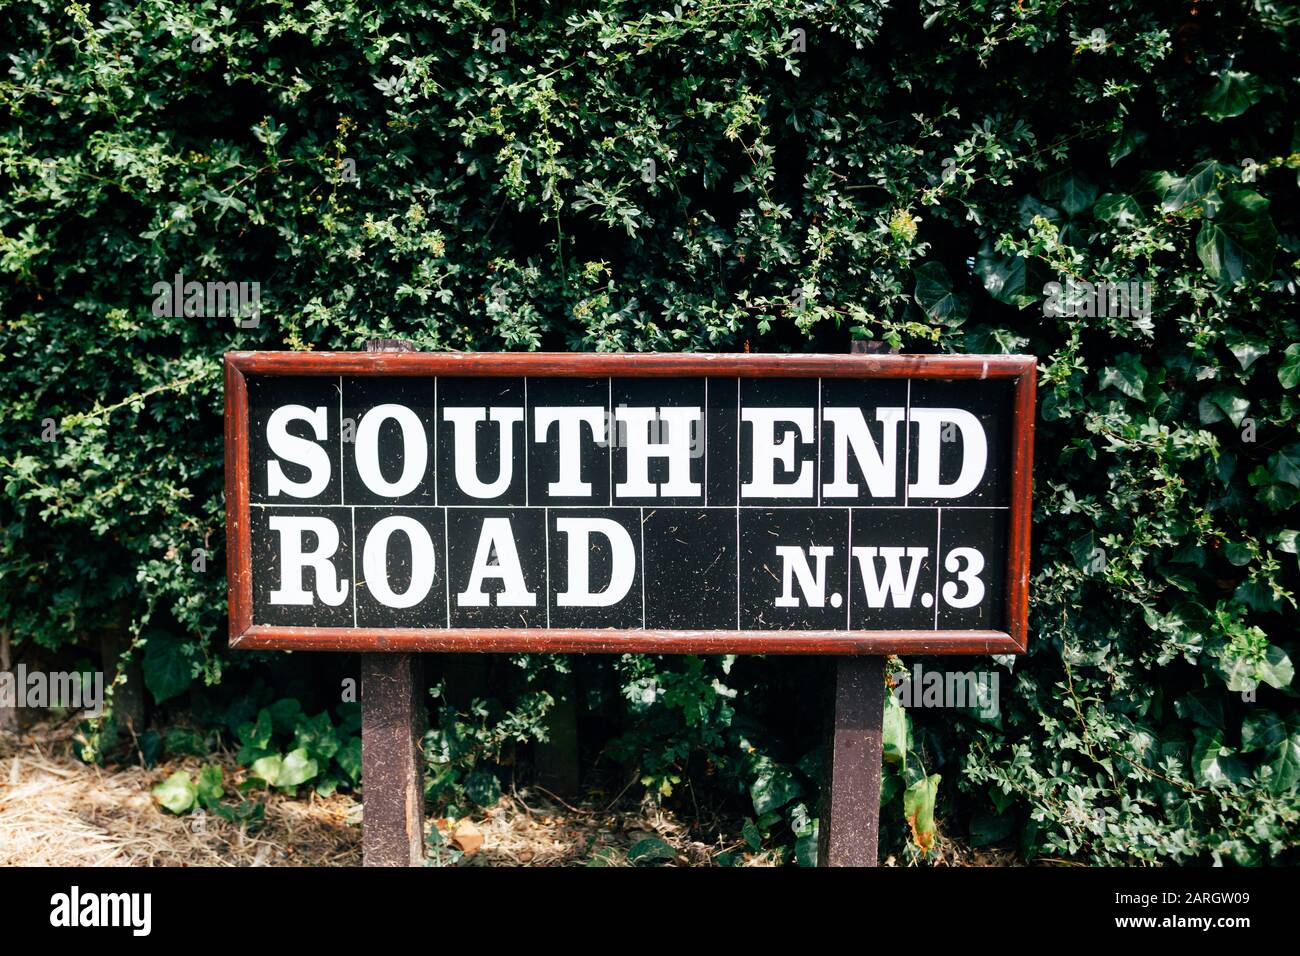 South End Road, panneau de nom, Hampstead, Londres. Un panneau de nom de rue est un type de panneau de signalisation utilisé pour identifier les routes nommées Banque D'Images